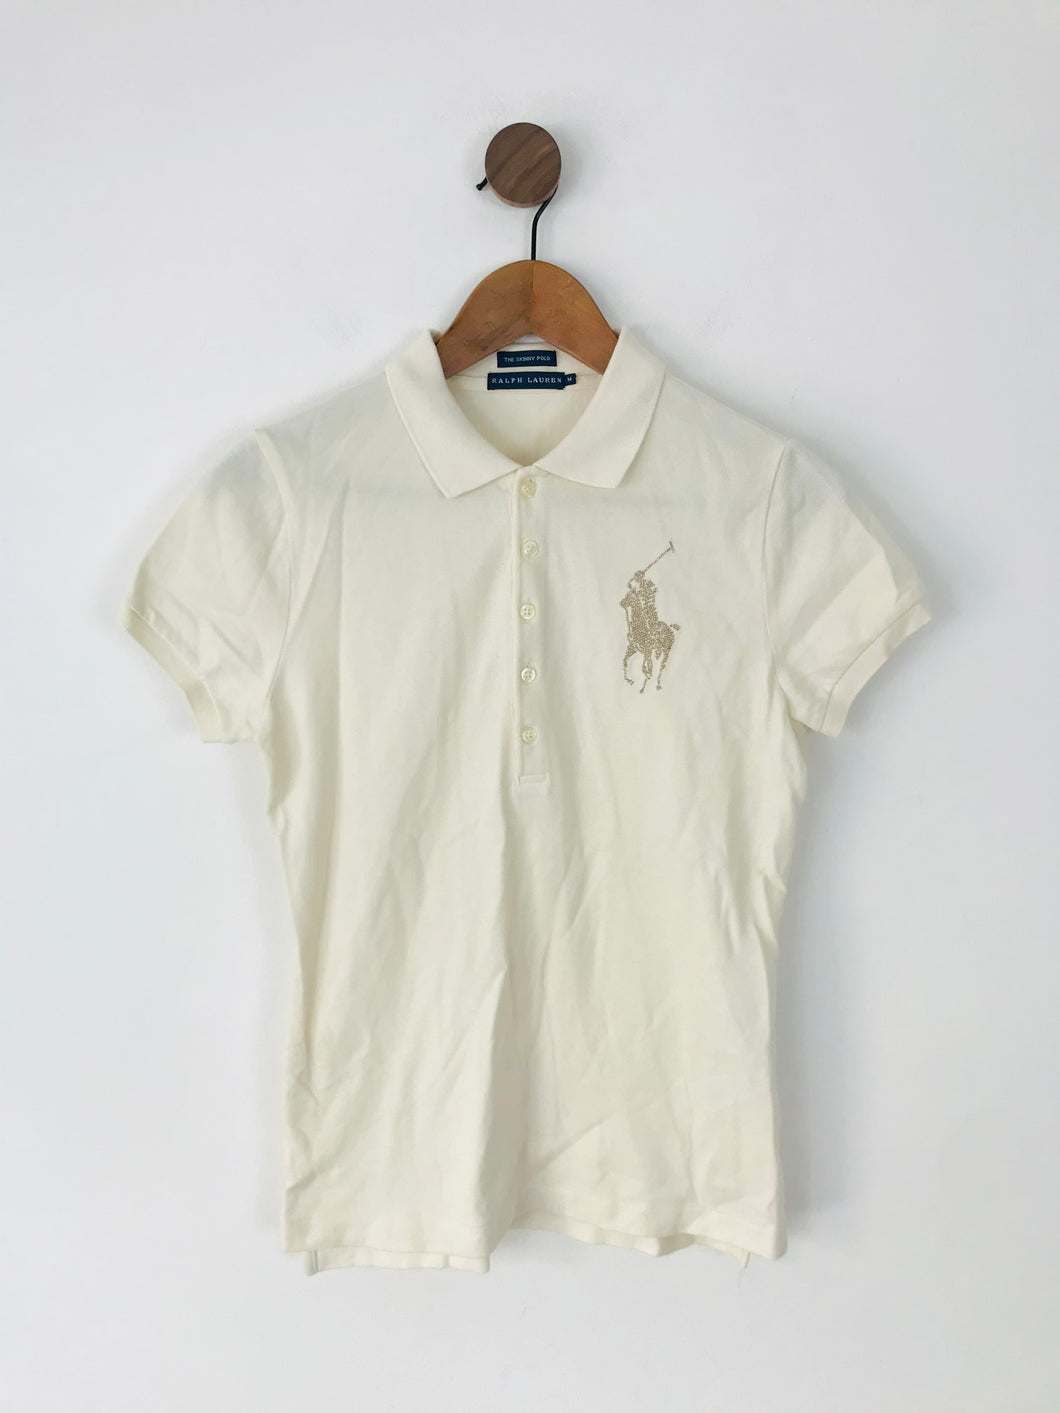 Ralph Lauren Women’s Skinny Polo Shirt Top | M | Cream White